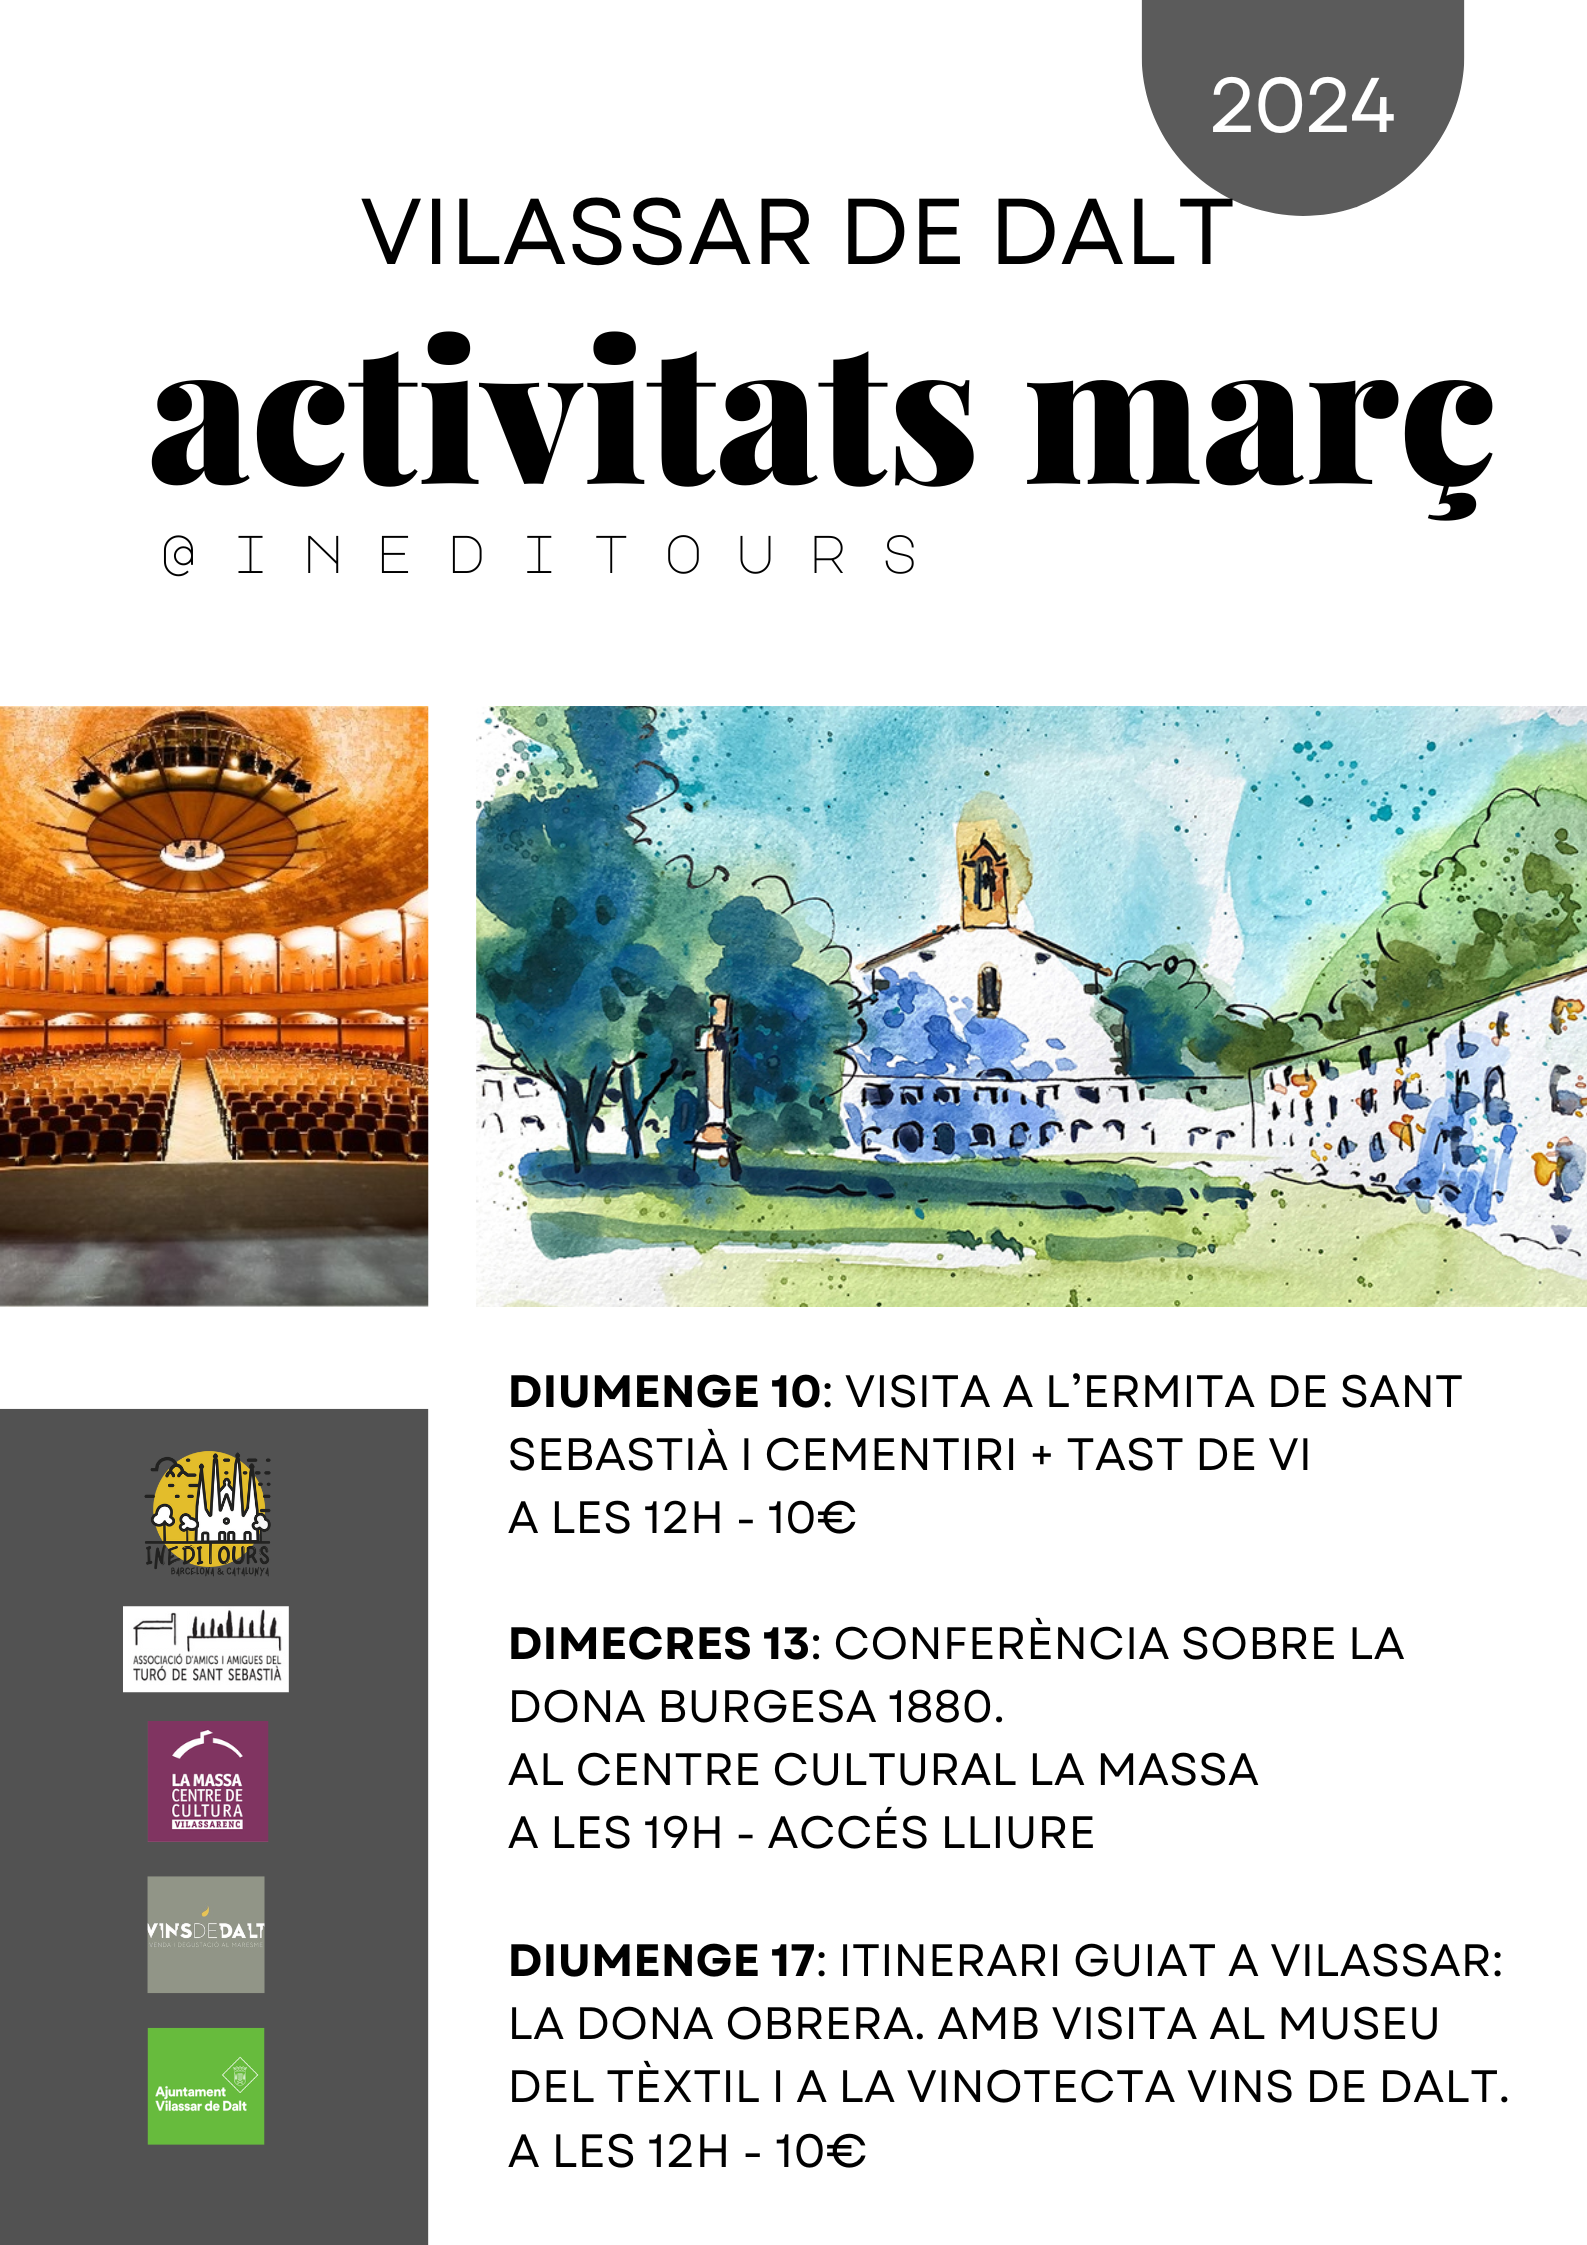 Itinerari guiat 'La dona obrera a Vilassar'